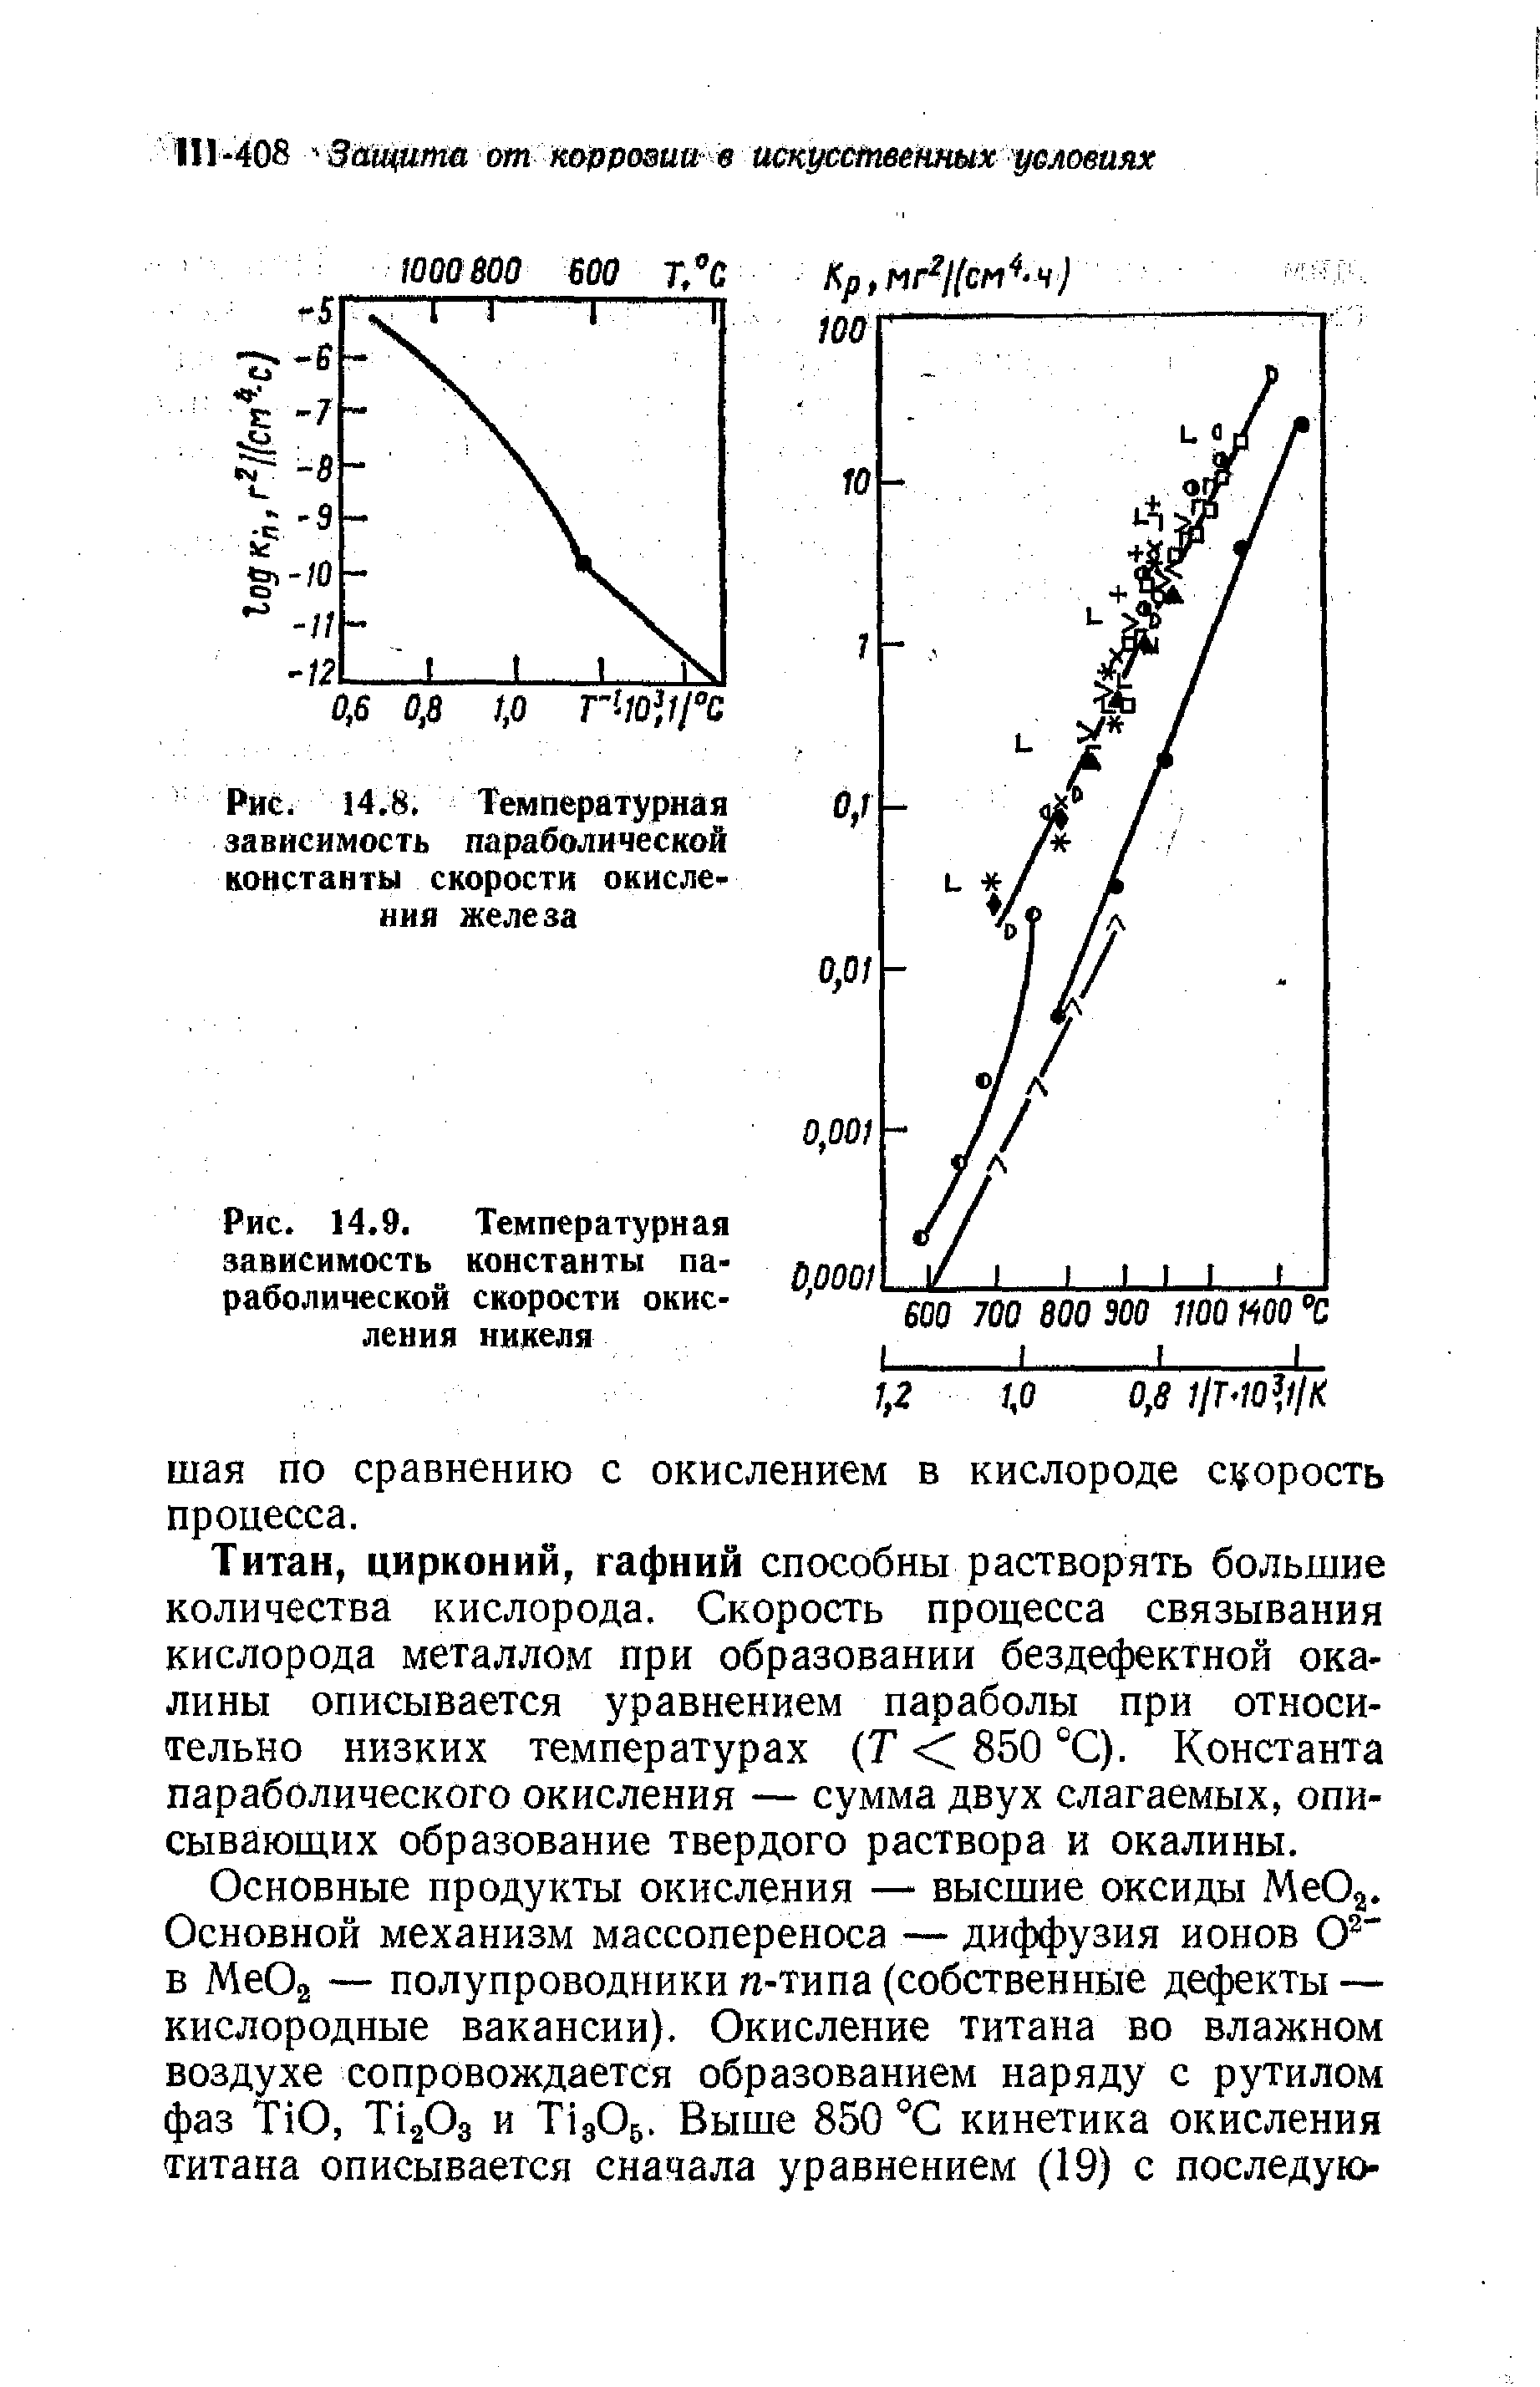 Рис. 14.9. <a href="/info/191882">Температурная зависимость</a> константы параболической скорости окисления никеля
